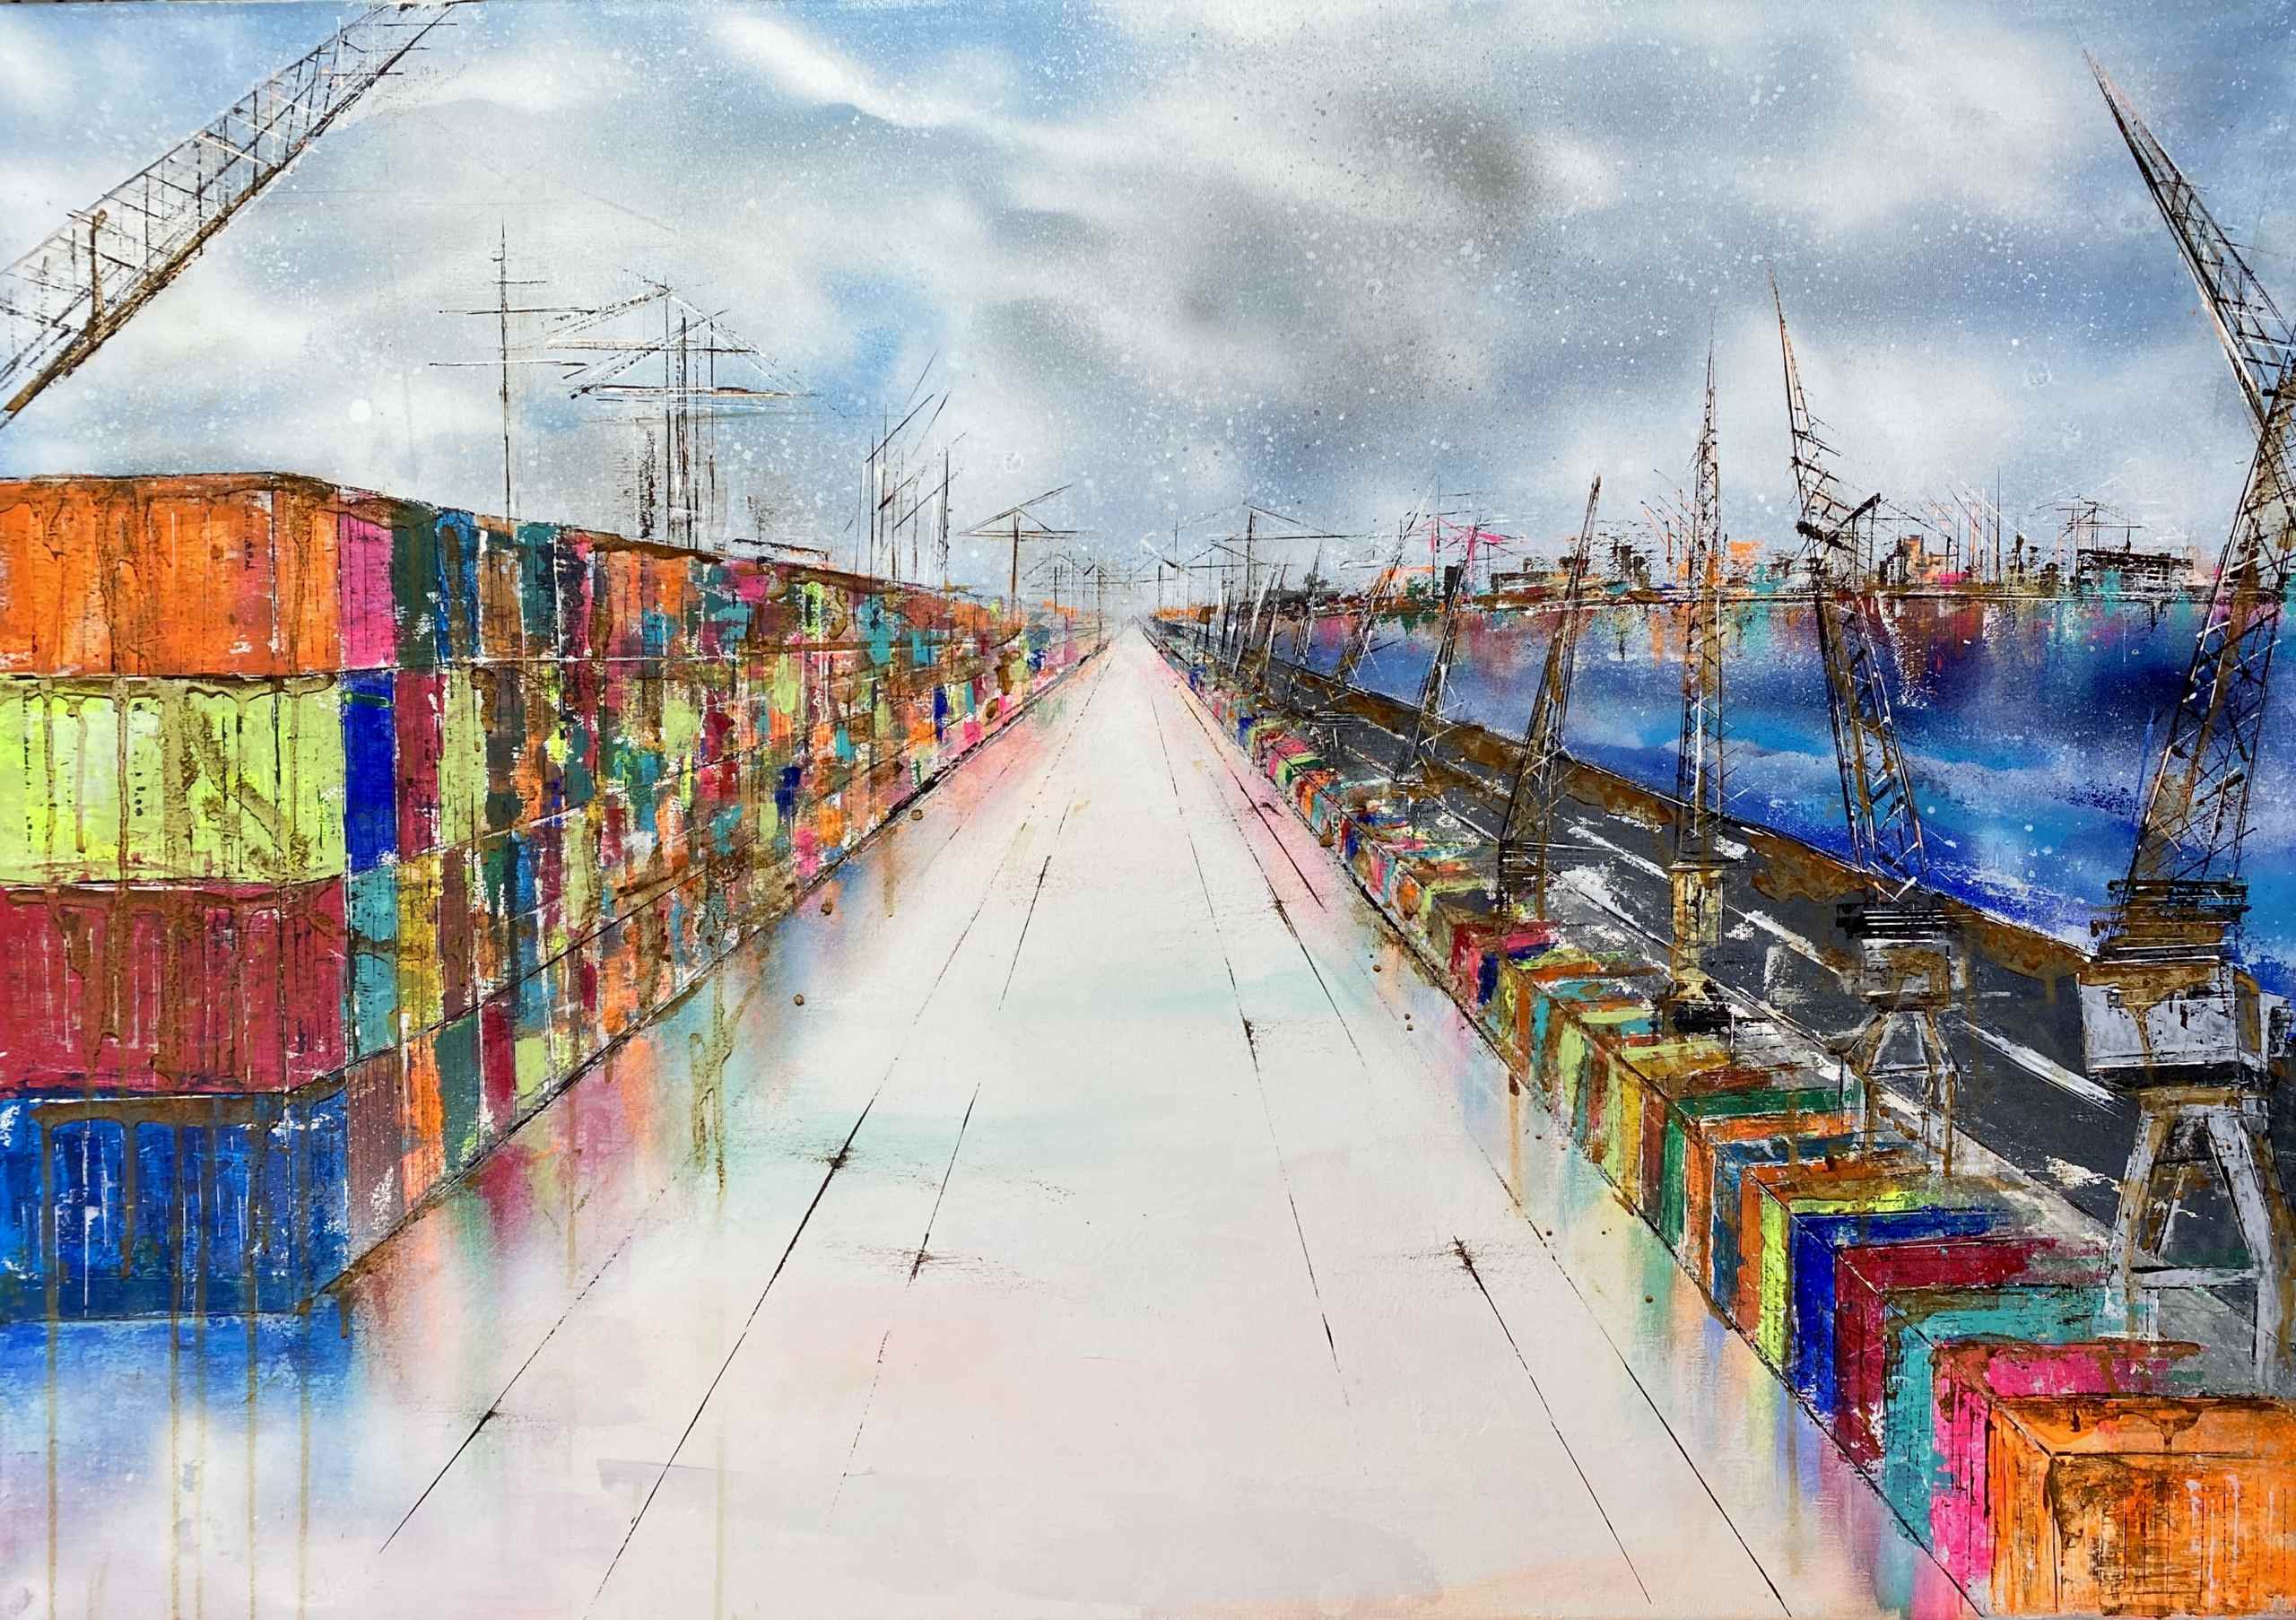 Artwork "Dock No 7" by Nina Groth